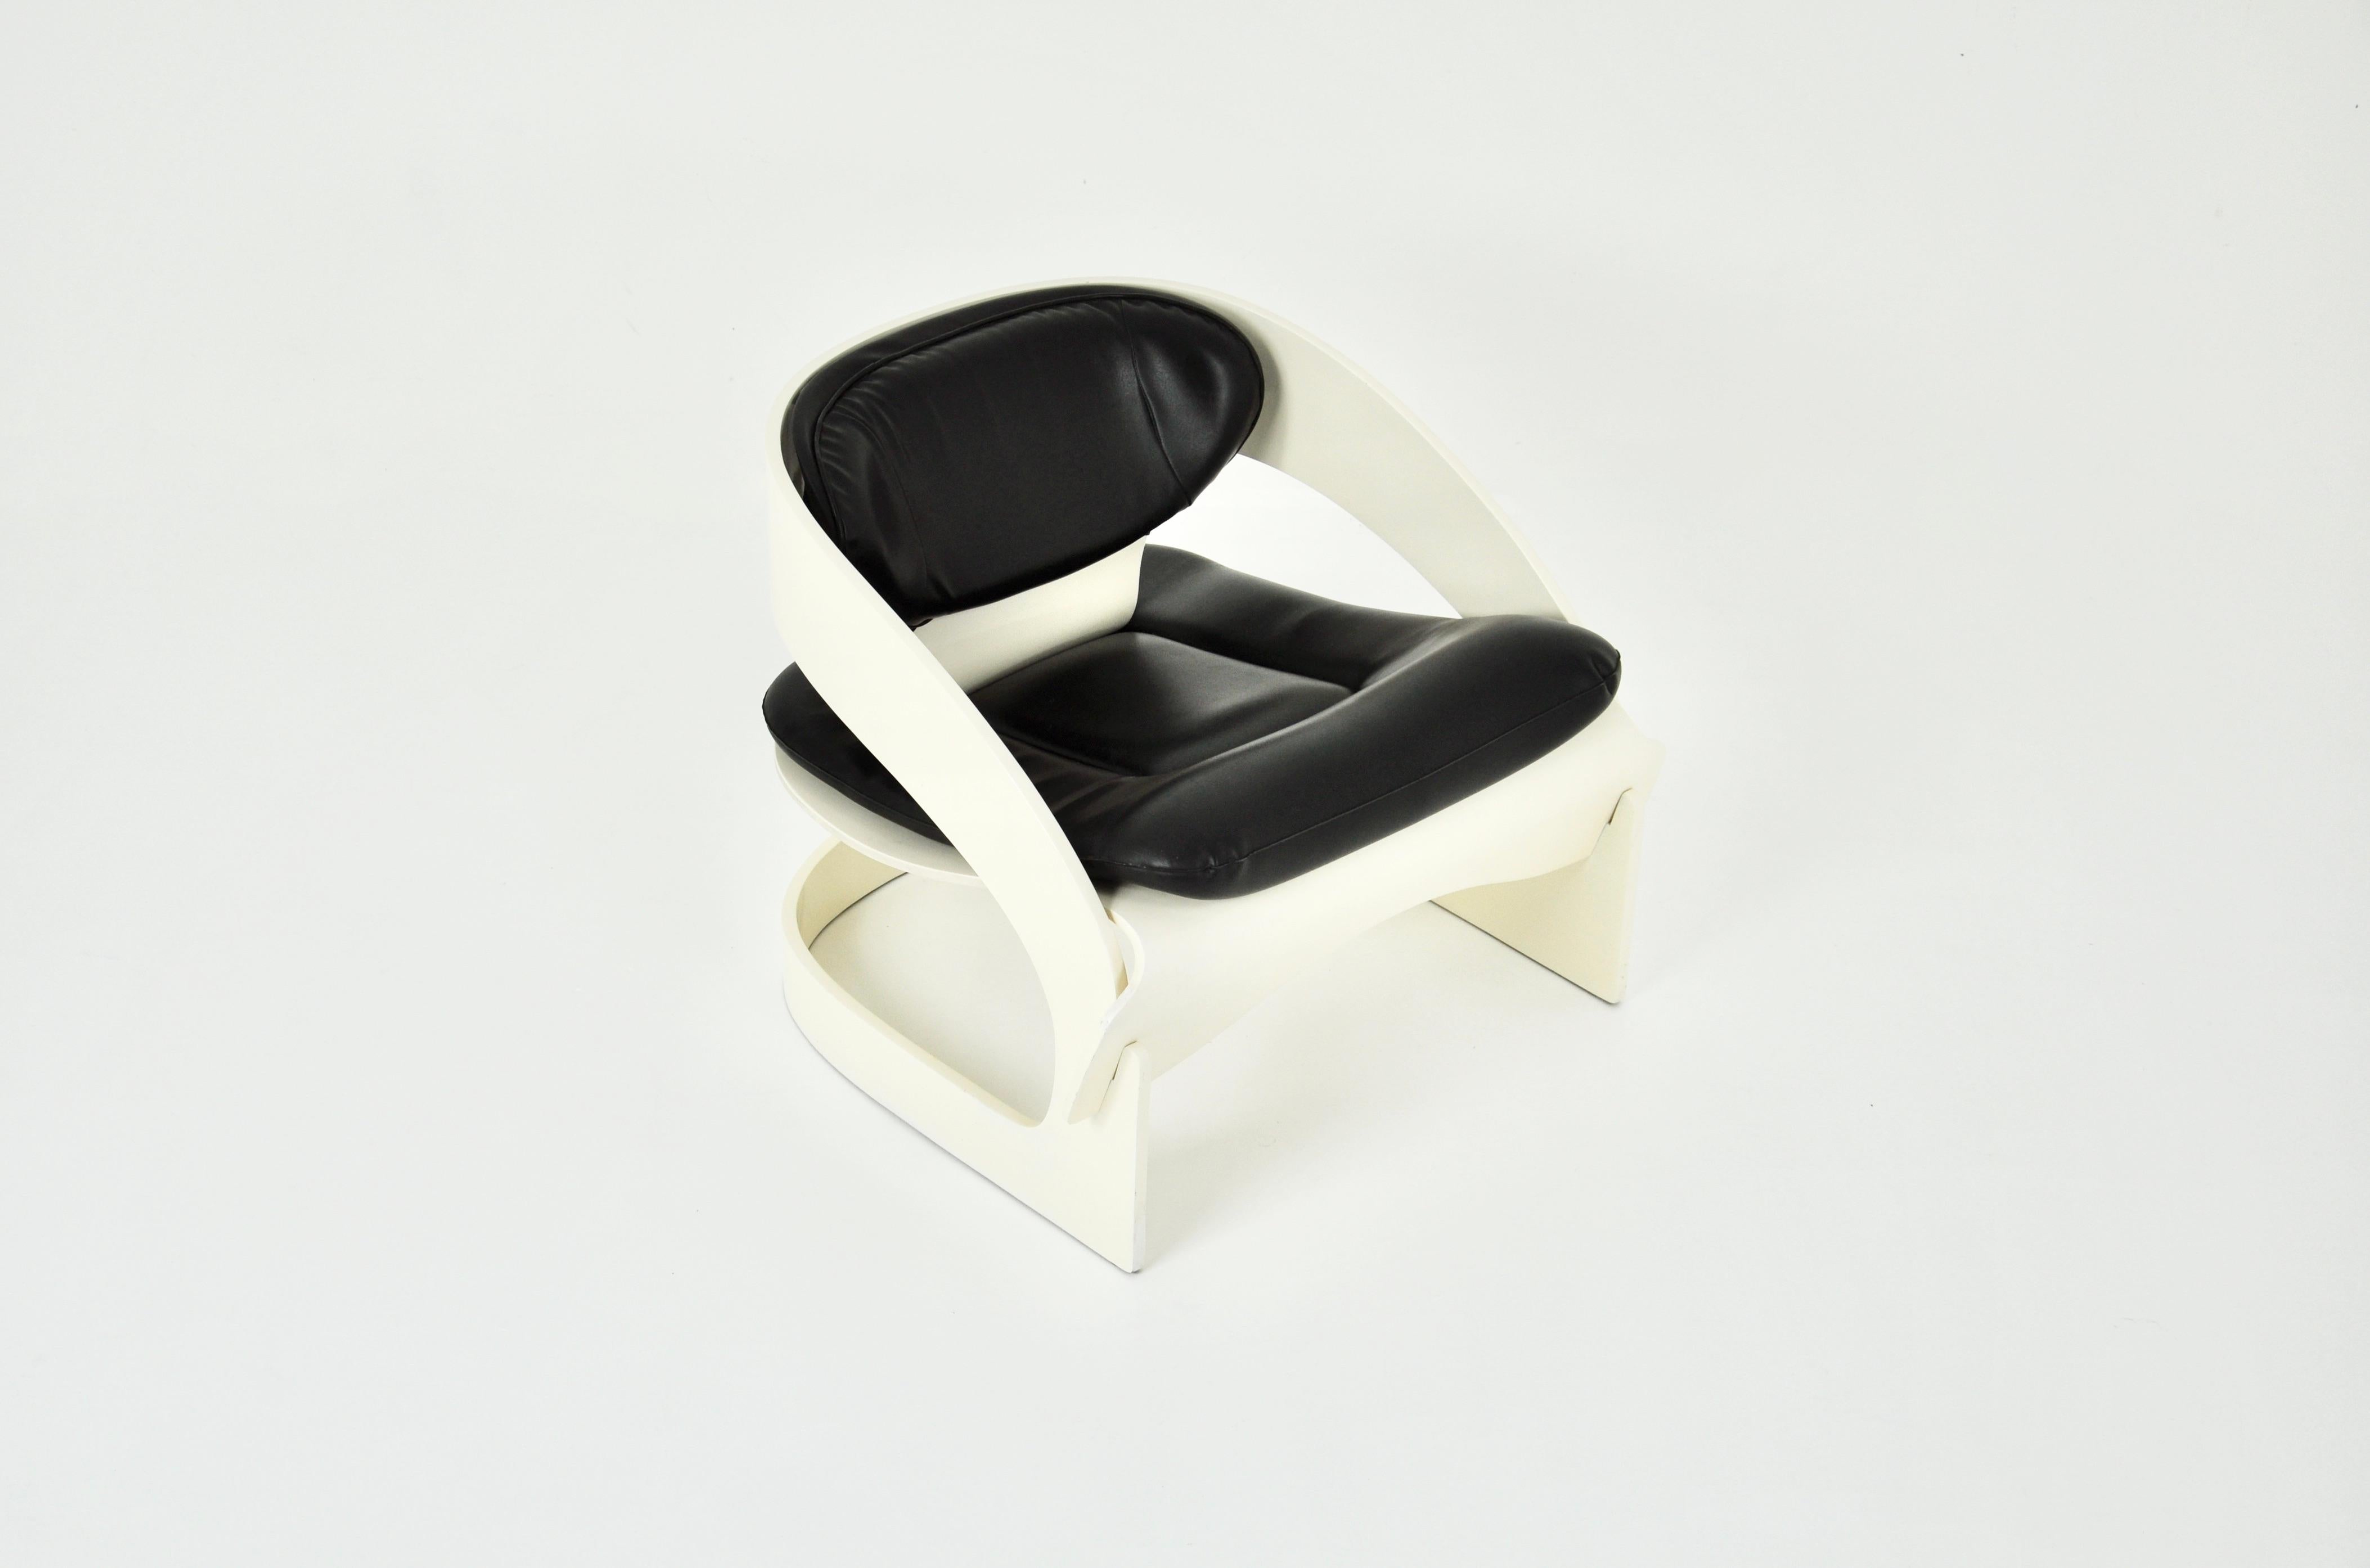 Weißer Holzsessel mit schwarzem Lederkissen. In begrenzter Stückzahl hergestellt: Nummeriert 8. Sitzhöhe 40cm. Alters- und zeitbedingte Abnutzung